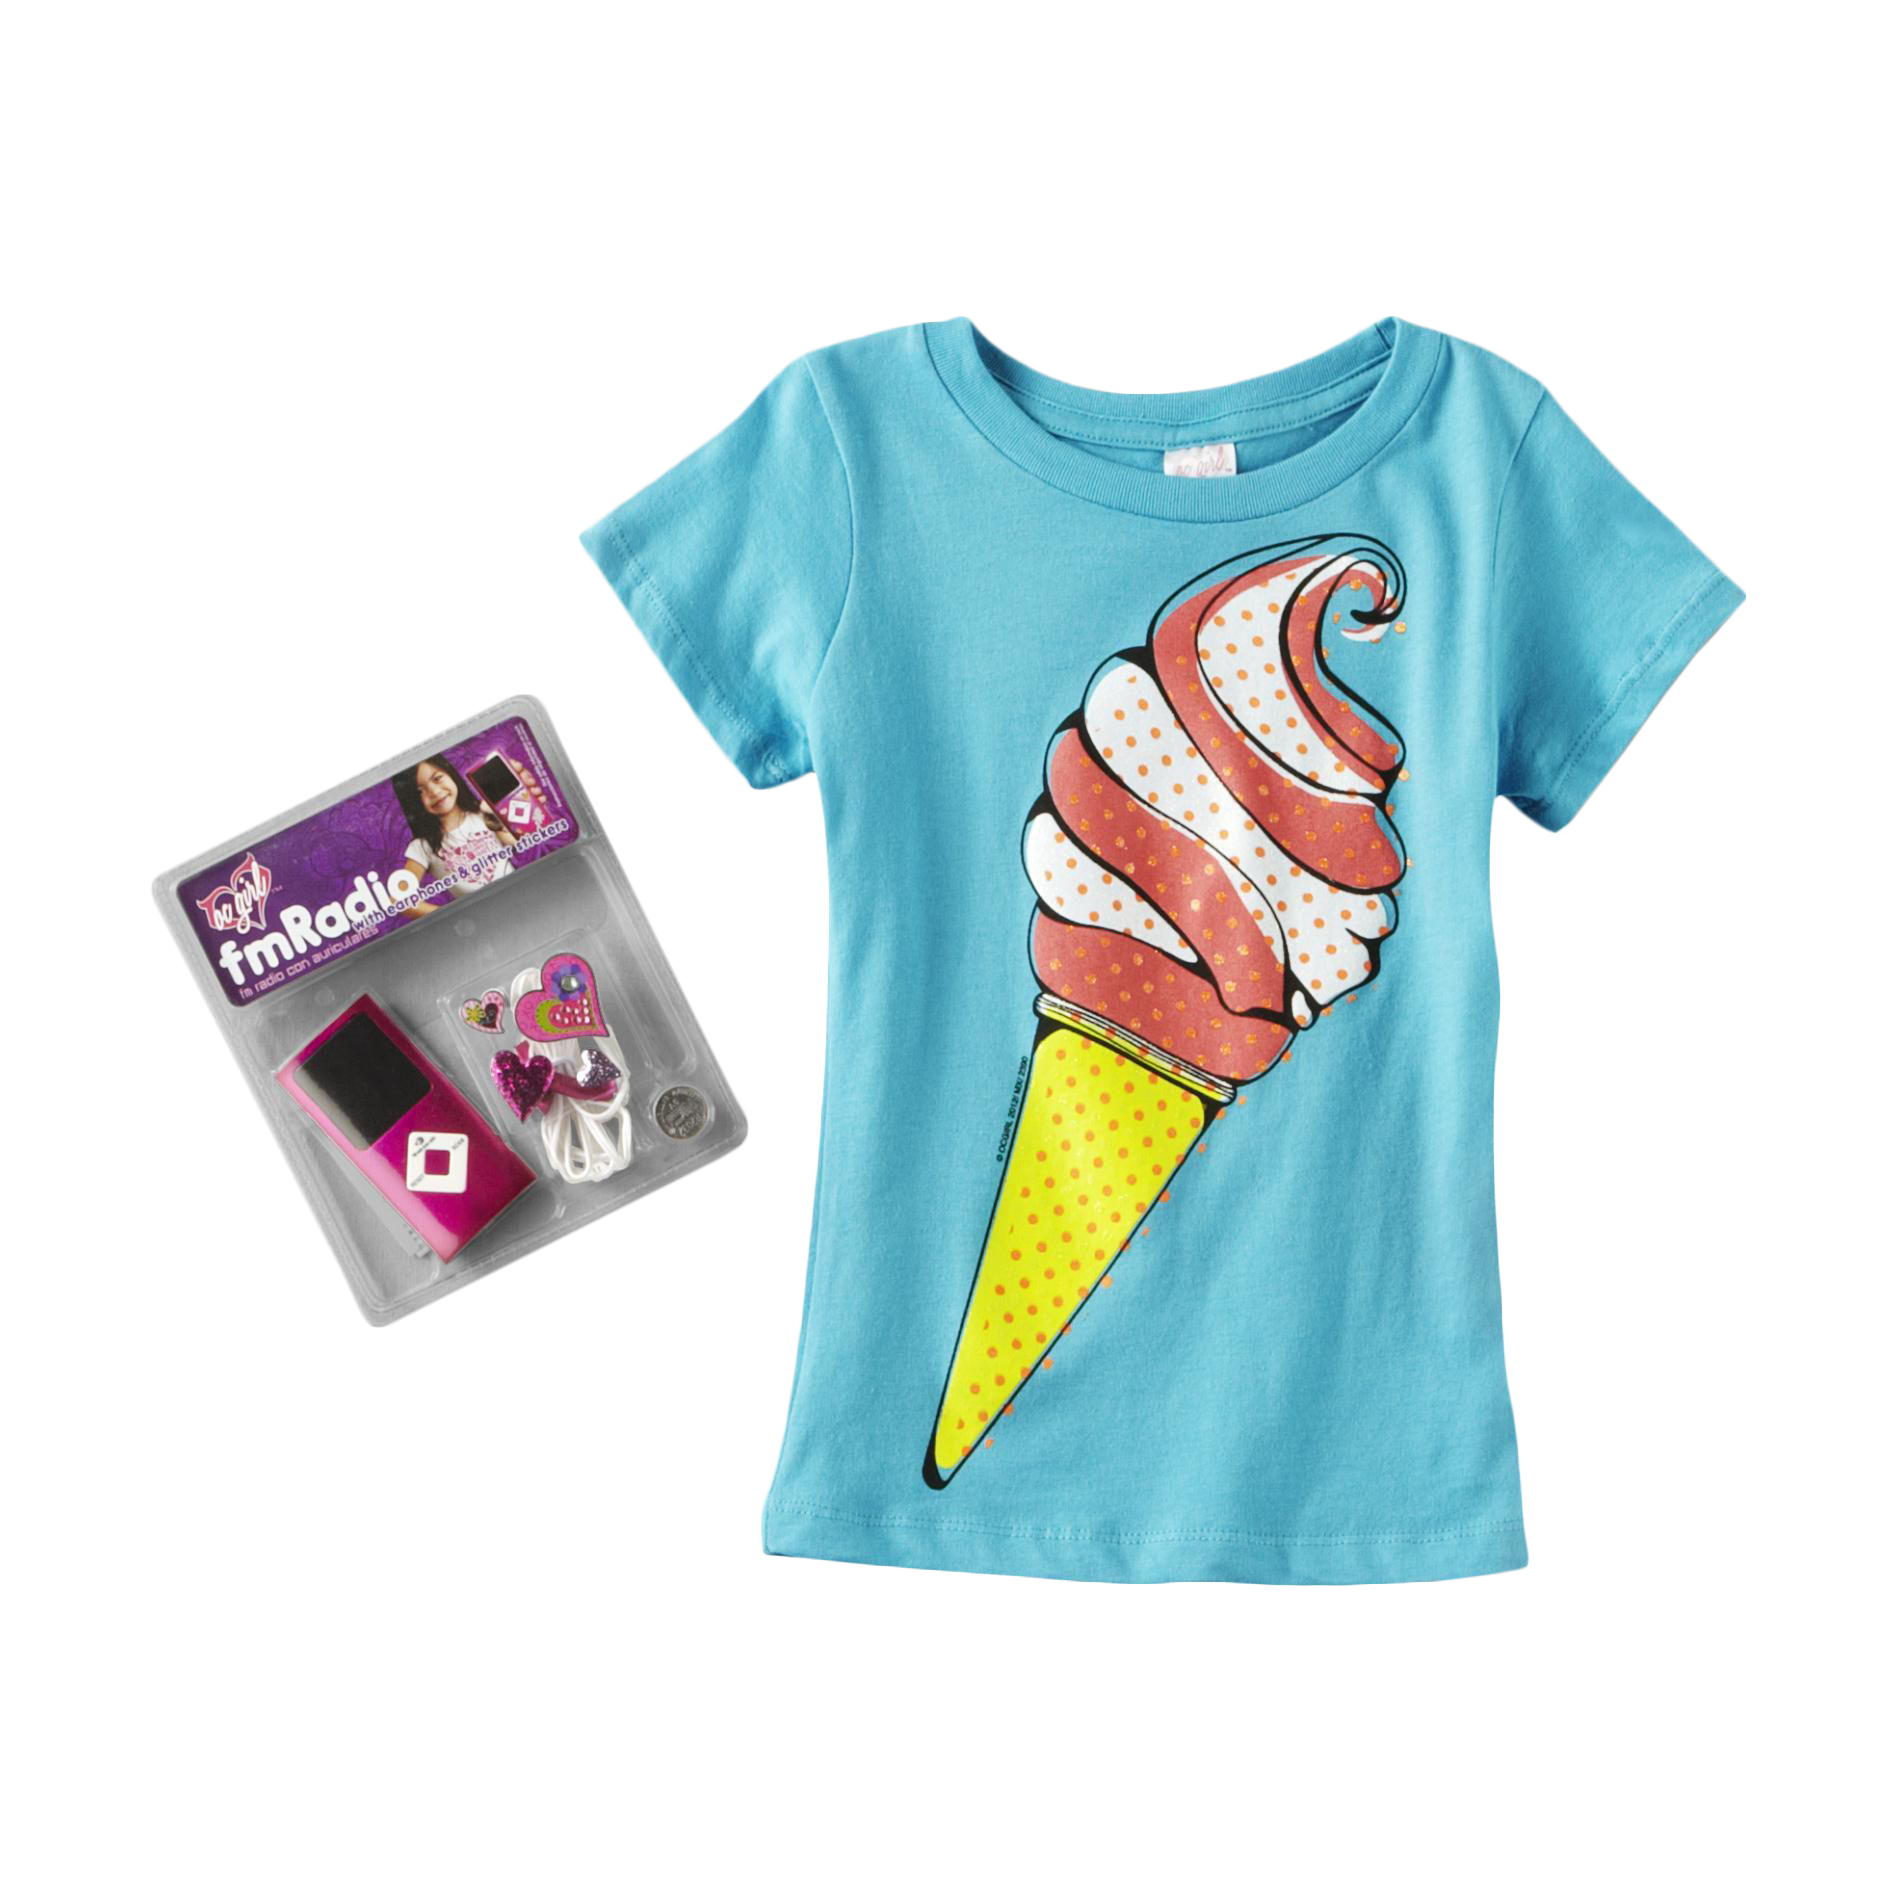 OC Girls Girl's Graphic T-Shirt & FM Radio - Ice Cream Cone